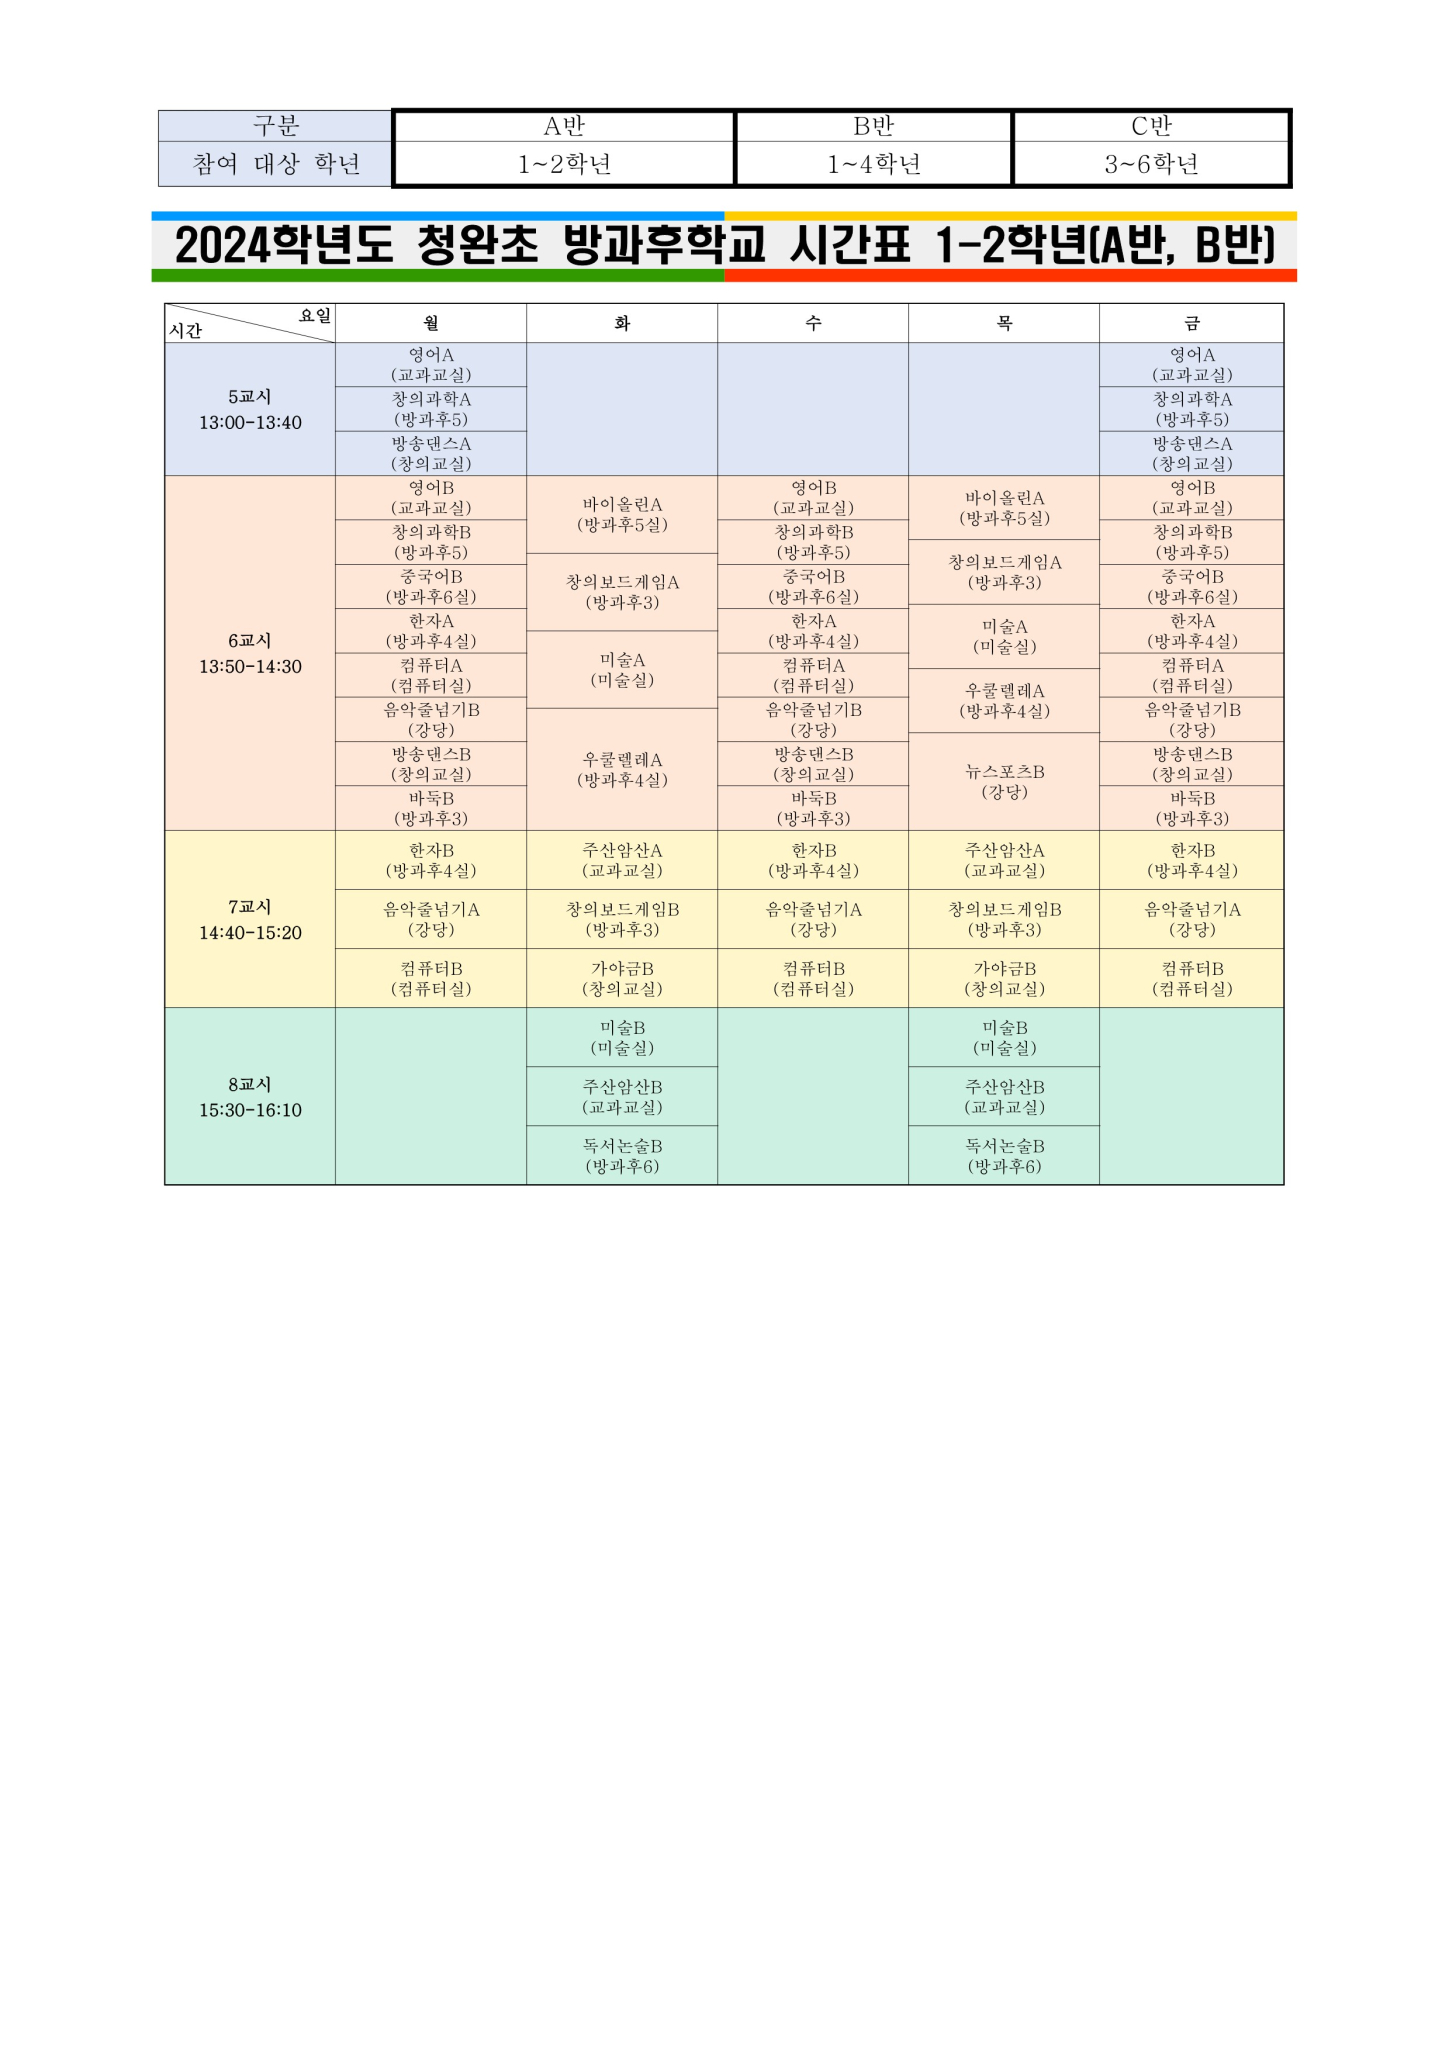 2. 방과후학교 프로그램 시간표 및 장소_1